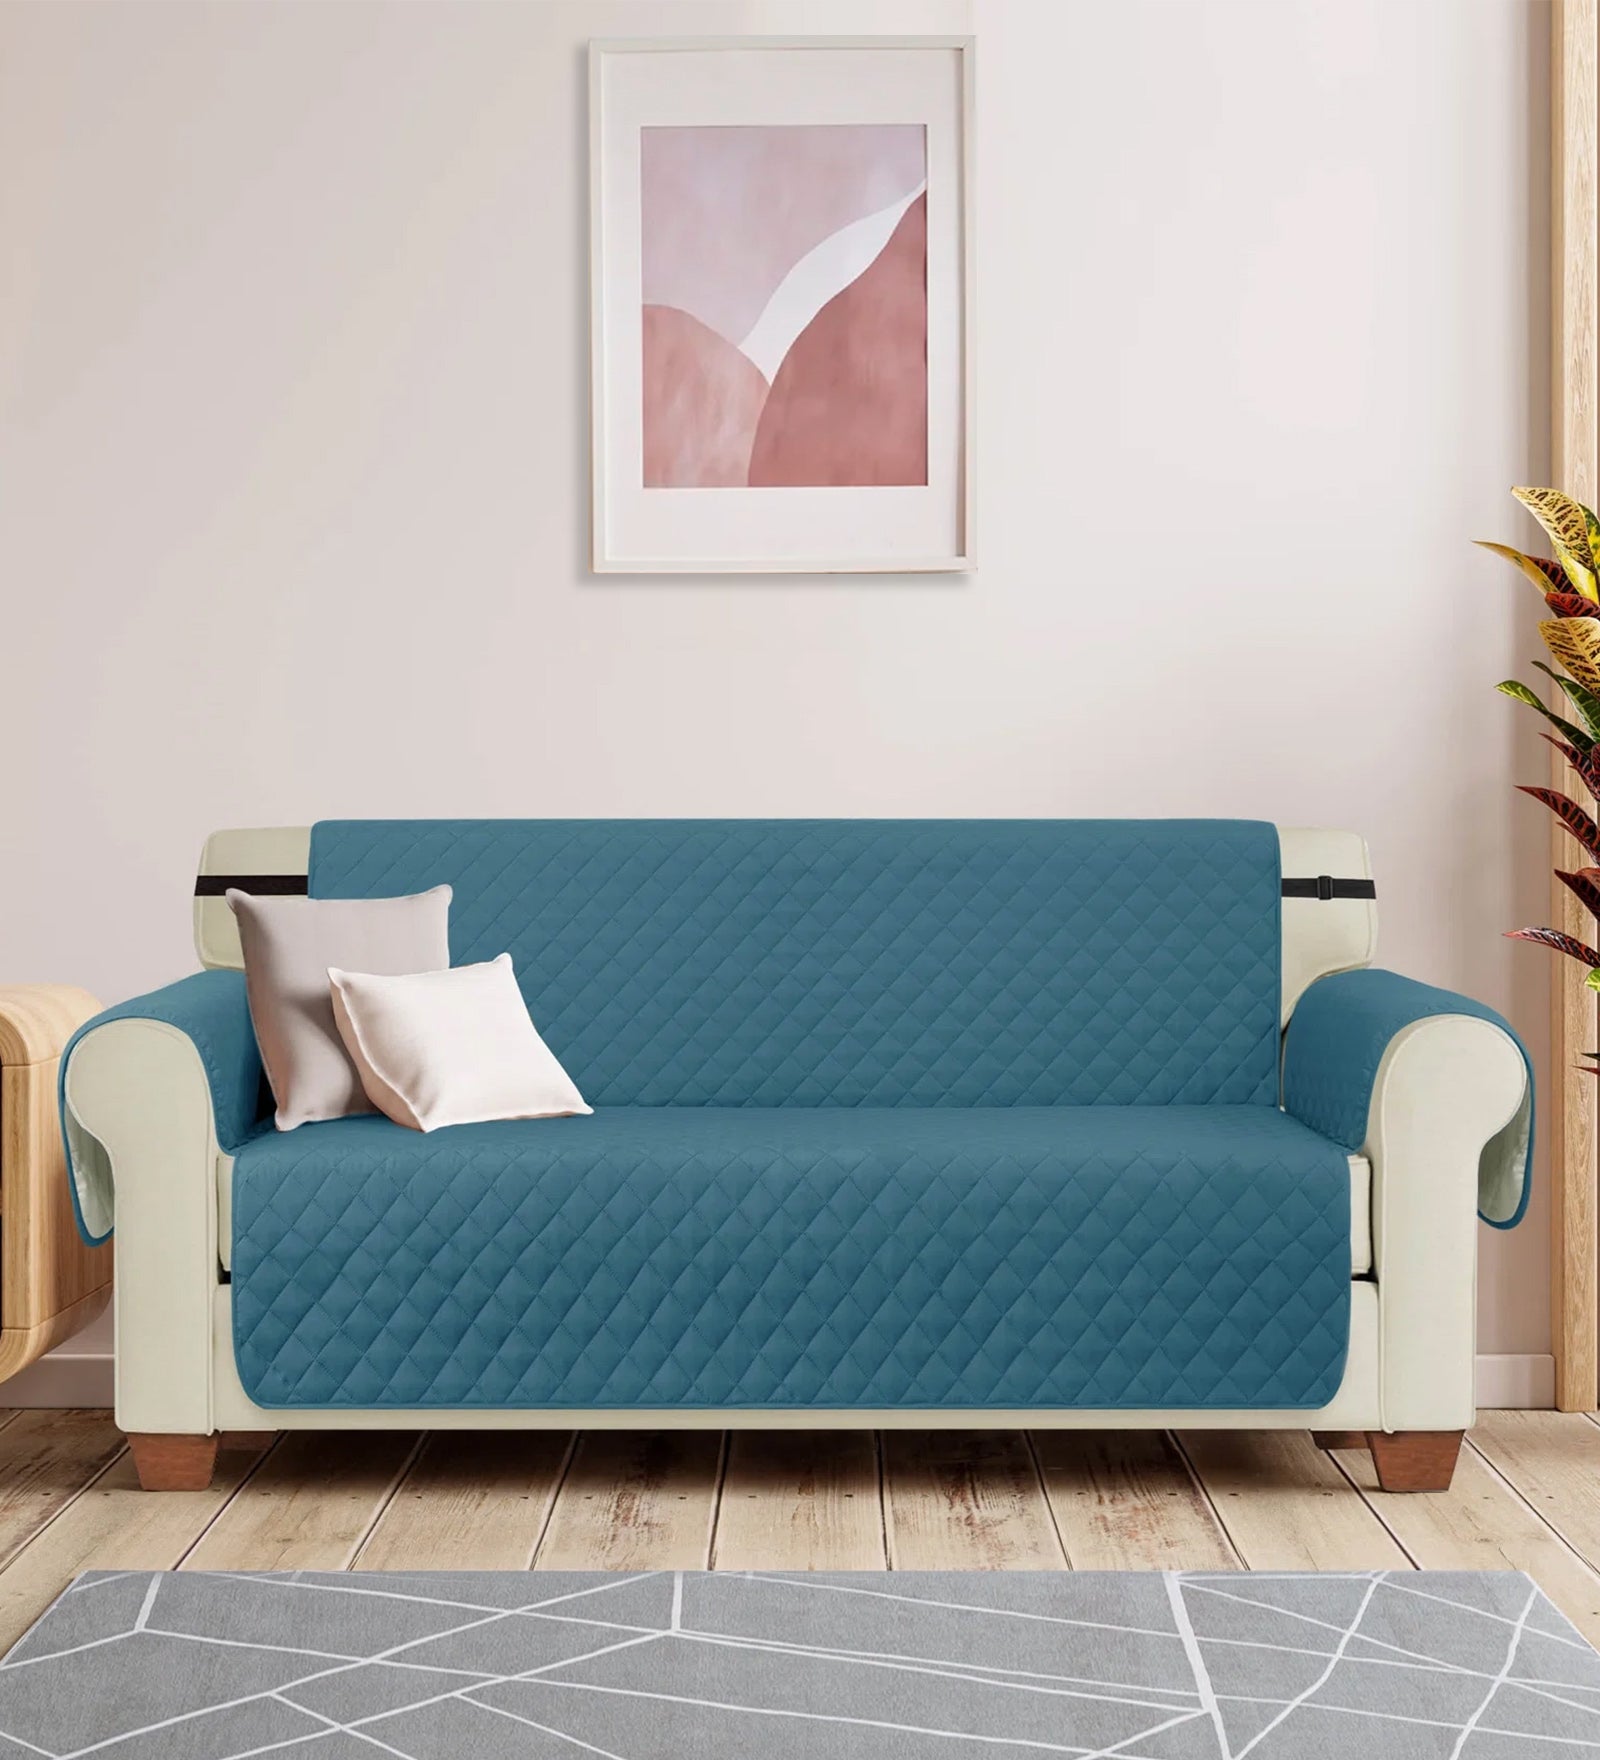 3 Seater Fabric Sofa Cover in Aqua Blue Colour